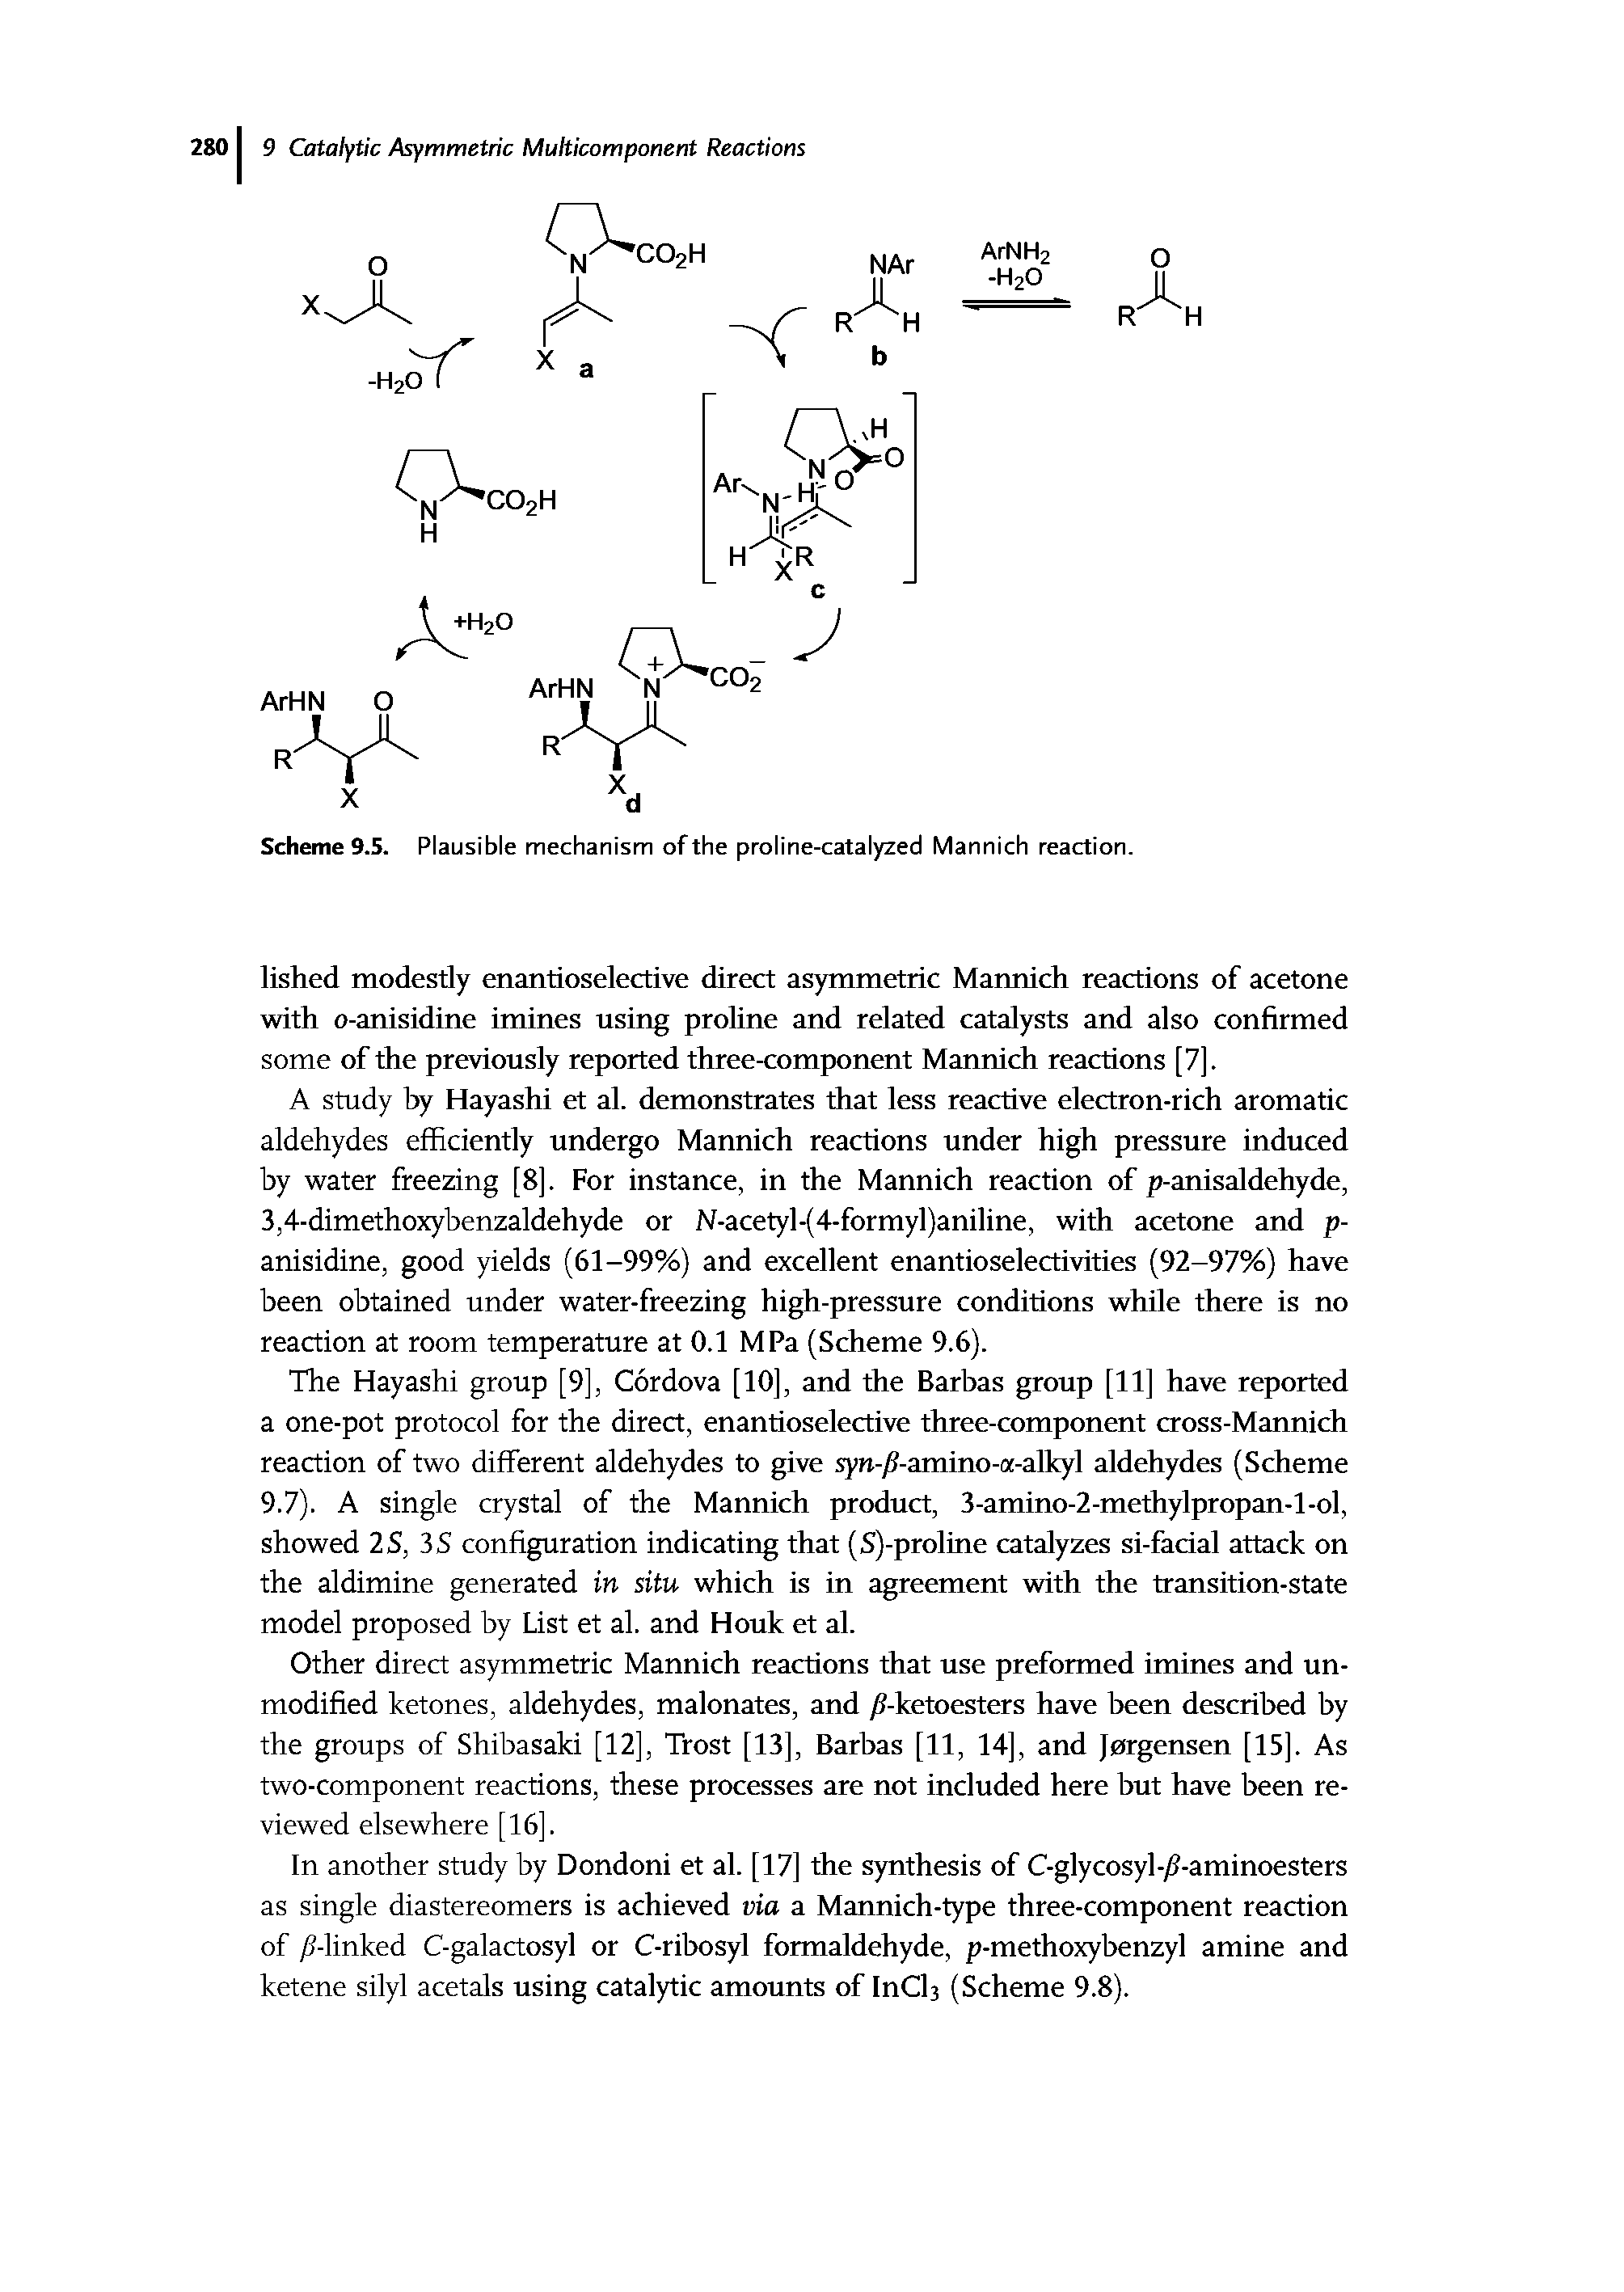 Scheme 9.5. Plausible mechanism of the proline-catalyzed Mannich reaction.